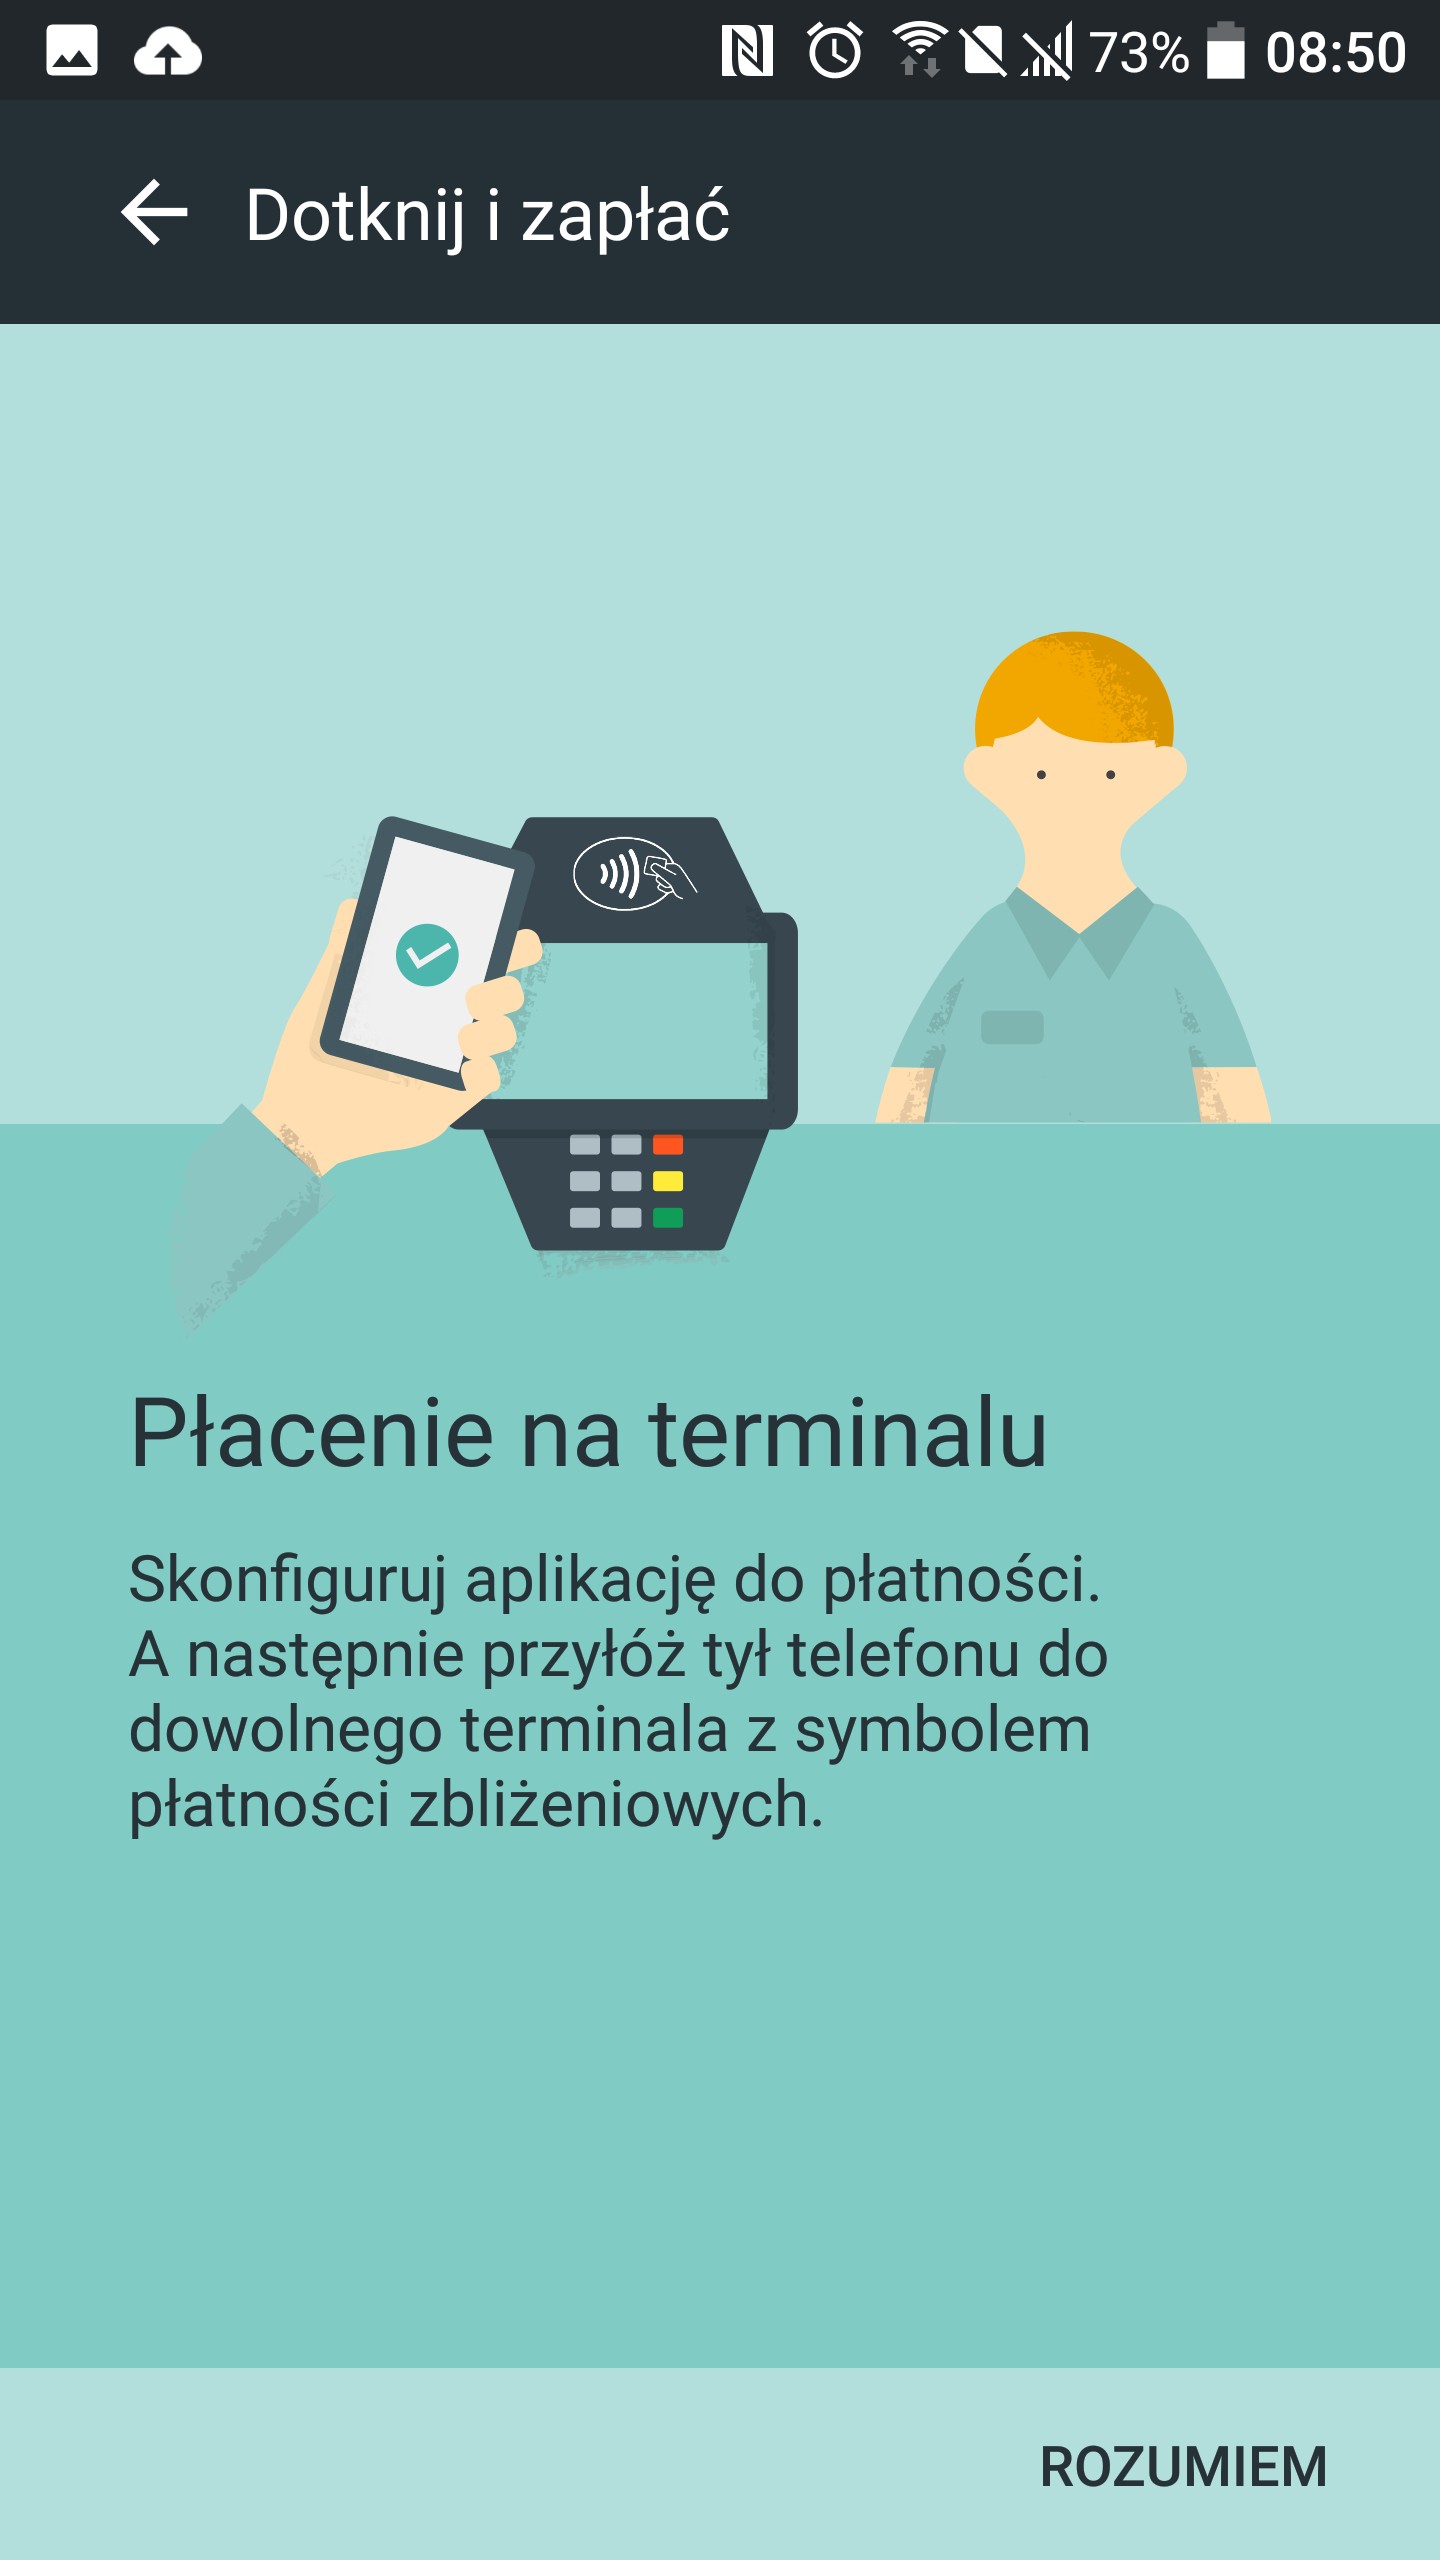 Z HTC 10 zapłacisz zbliżeniowo za zakupy - sprawdziłem na wielu terminalach i działa - recenzja 90sekund.pl